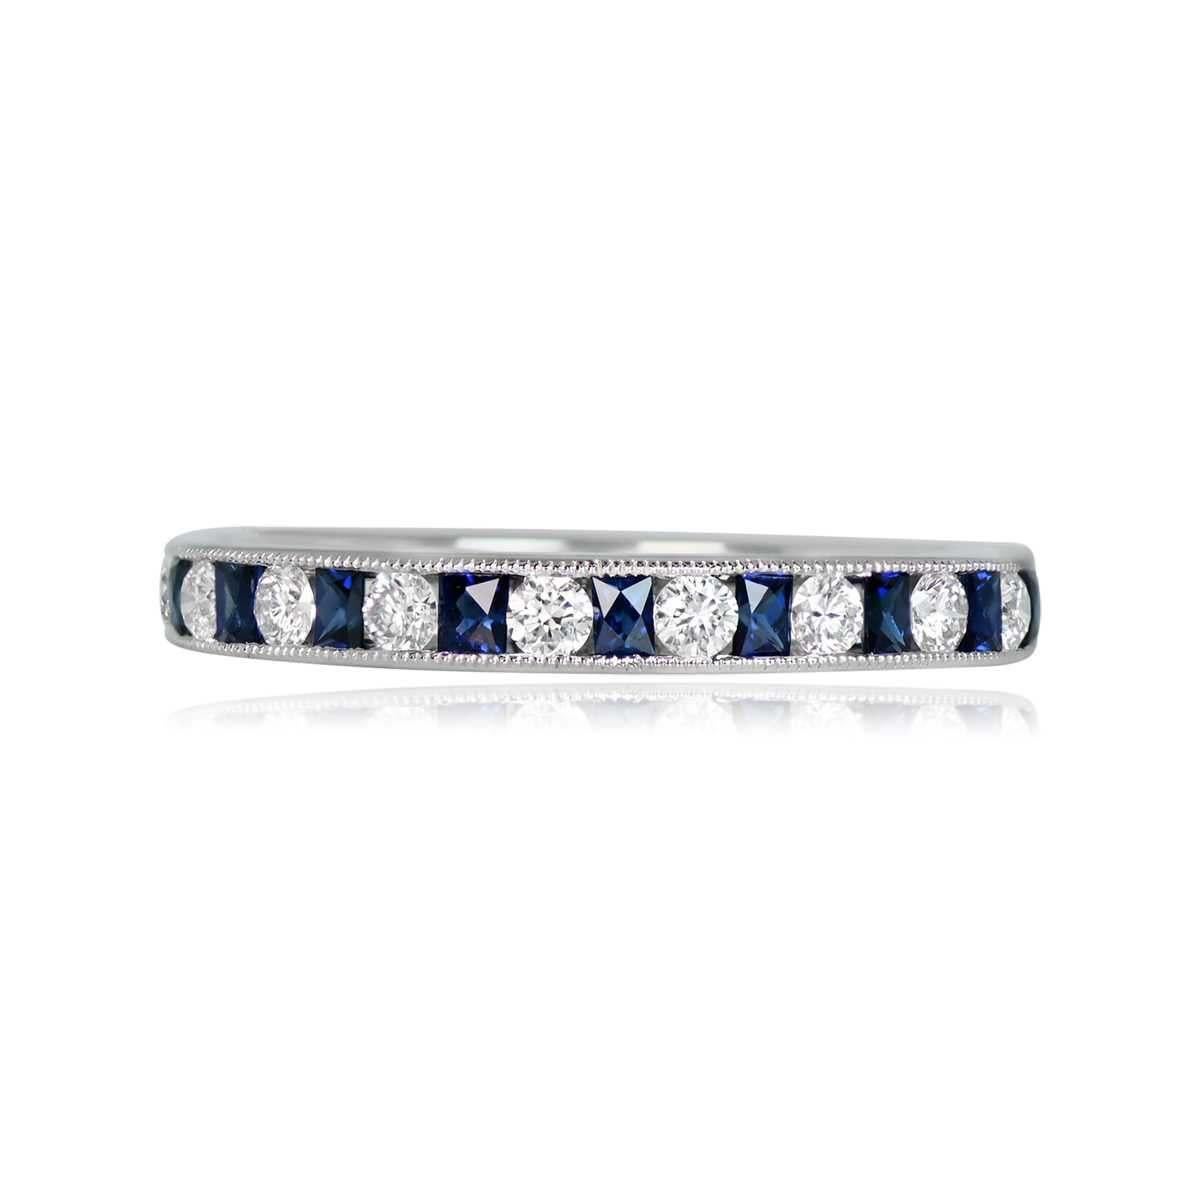 Ein exquisiter, aus Platin gefertigter Ring mit halber Ewigkeit, mit natürlichen Saphiren im französischen Schliff und runden Diamanten im Brillantschliff in einer kunstvollen Kanalfassung mit zarter Maserung. Die Diamanten haben ein